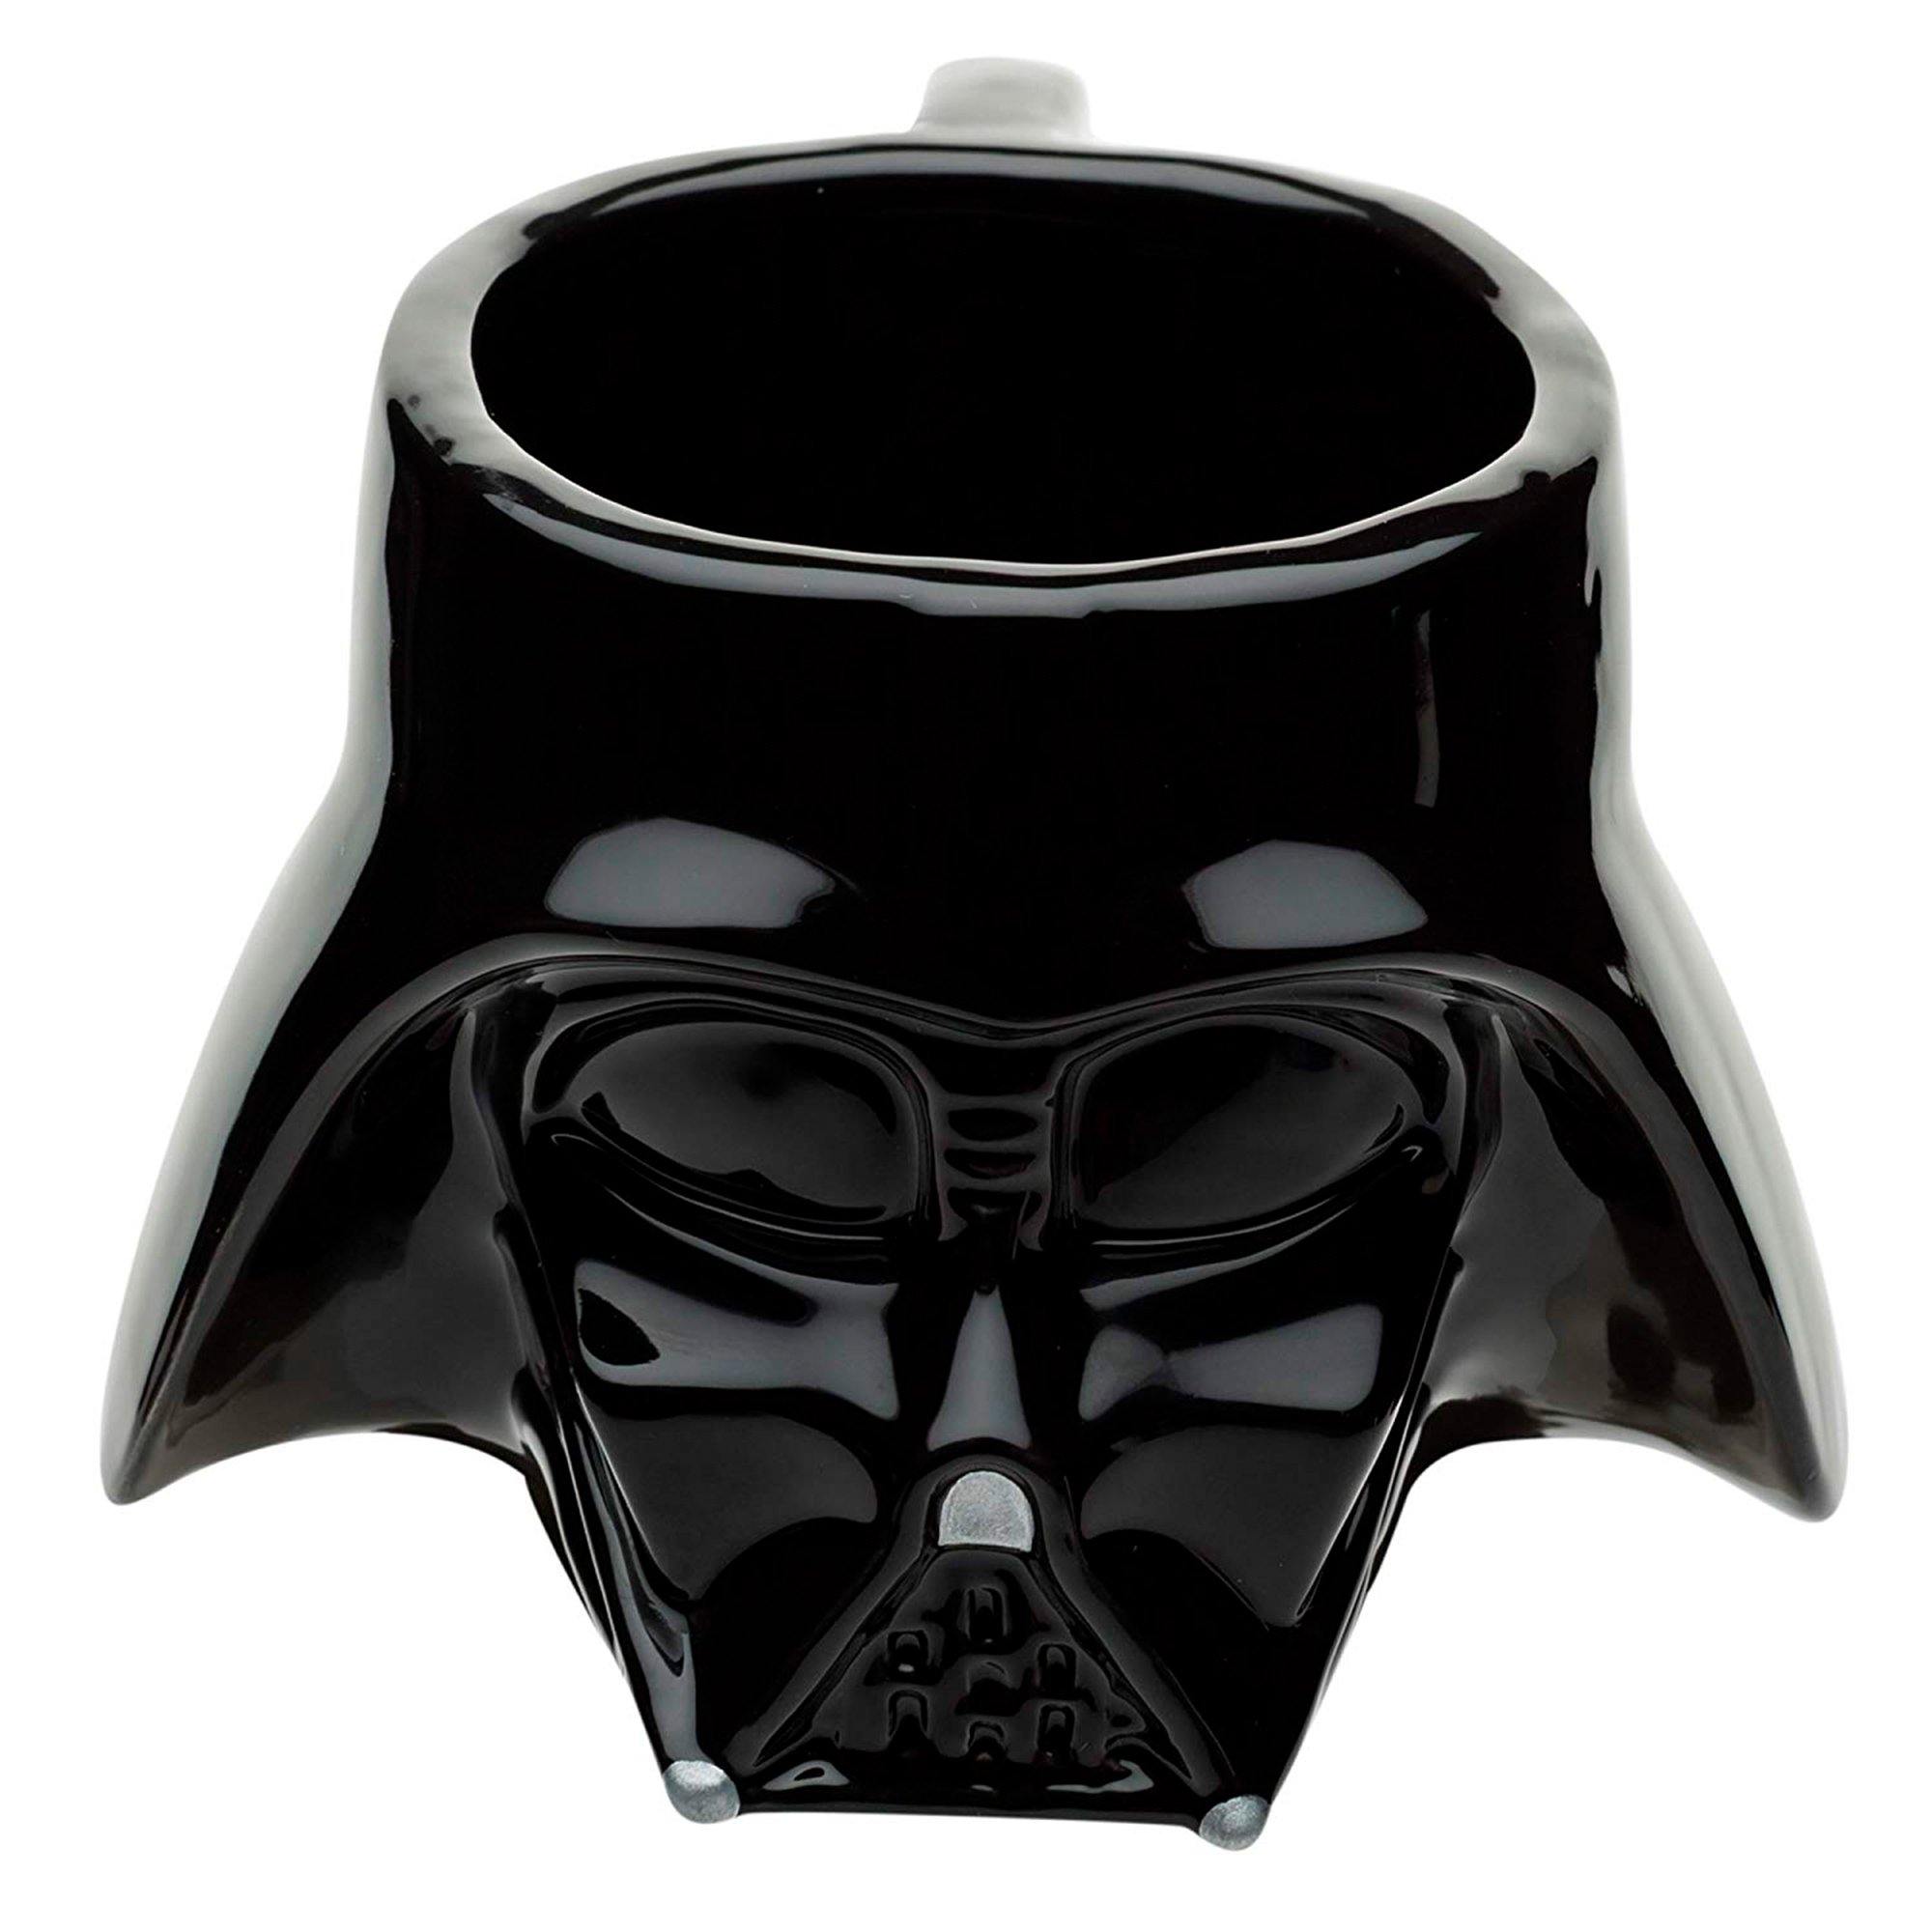 Taza Darth Vader 500 ml 1555-3012 - Ambient 21